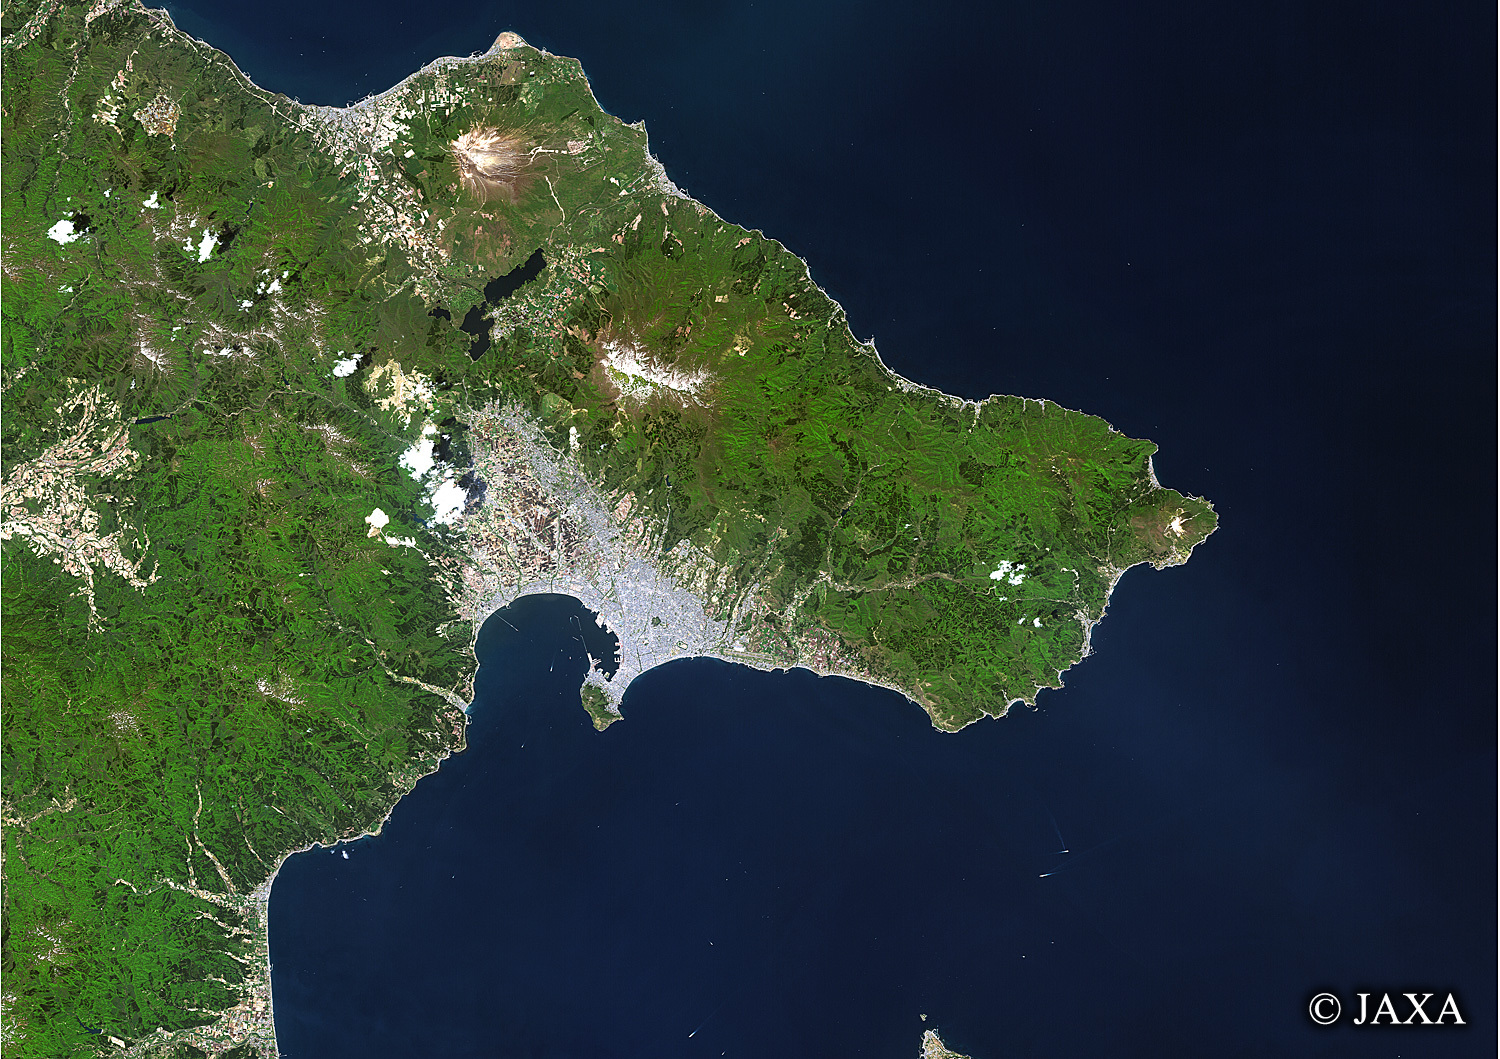 だいちから見た日本の都市 亀田半島:衛星画像